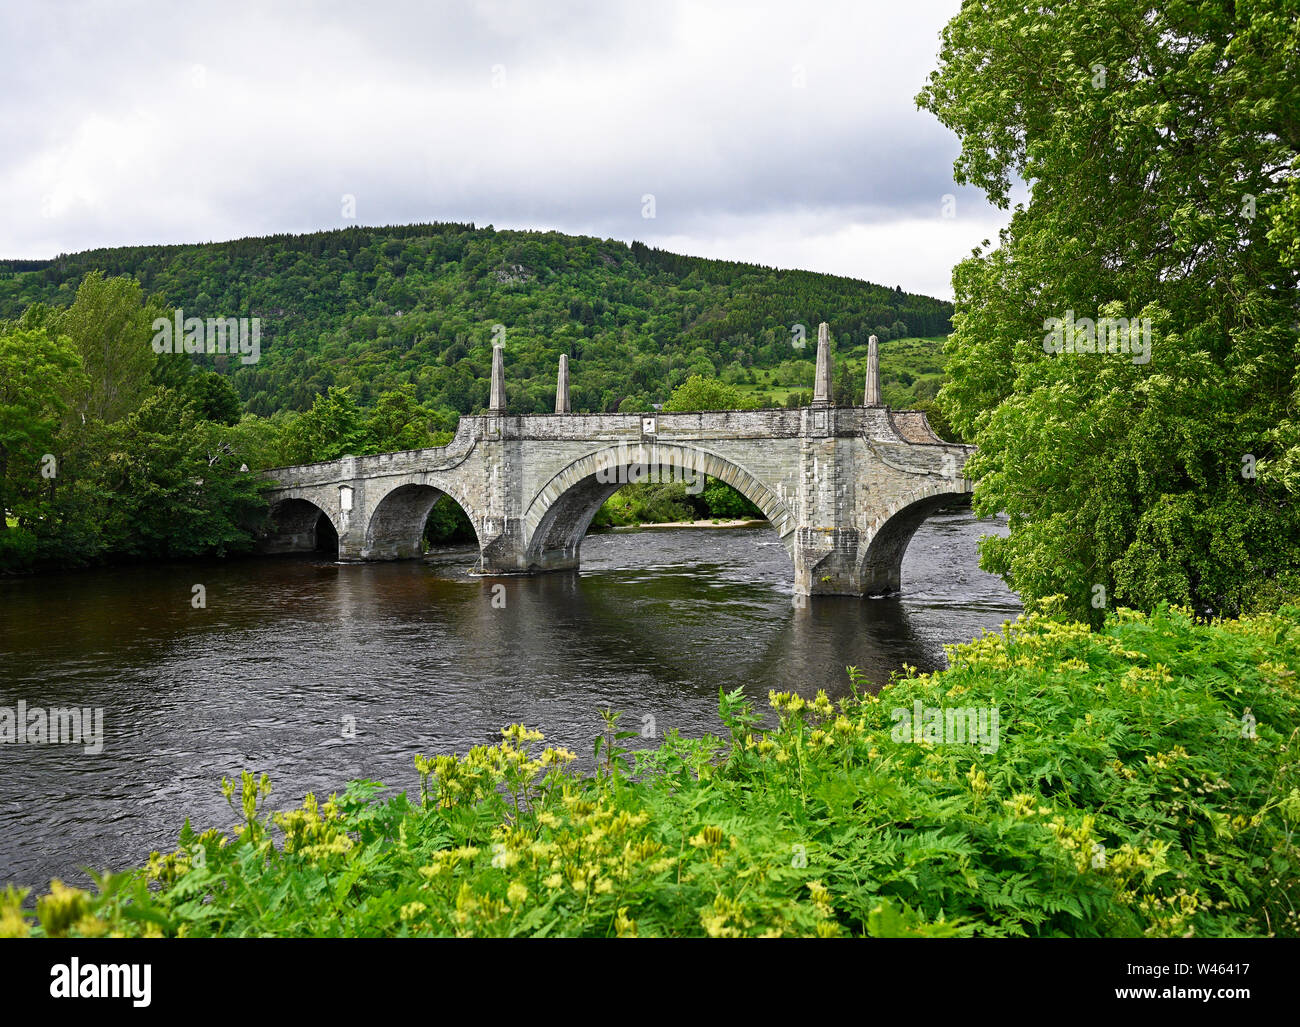 Le Général Wade's Bridge et la rivière Tay. Aberfeldy, Perth et Kinross, Ecosse, Royaume-Uni, Europe. Banque D'Images